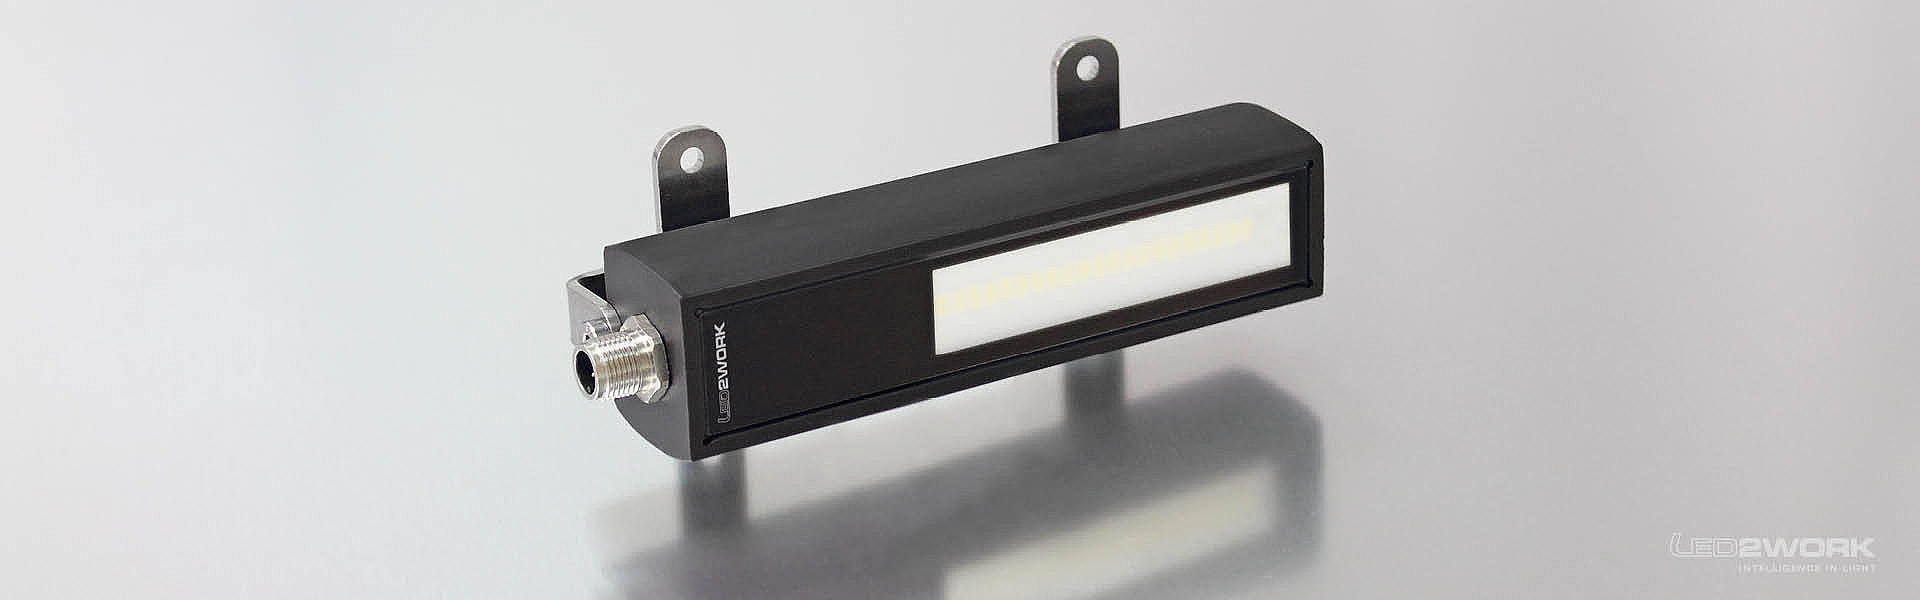 Illustration du luminaire LED pour machines | Luminaire LED pour montage en saillie | MIDILED_Aufbau - LED2WORK